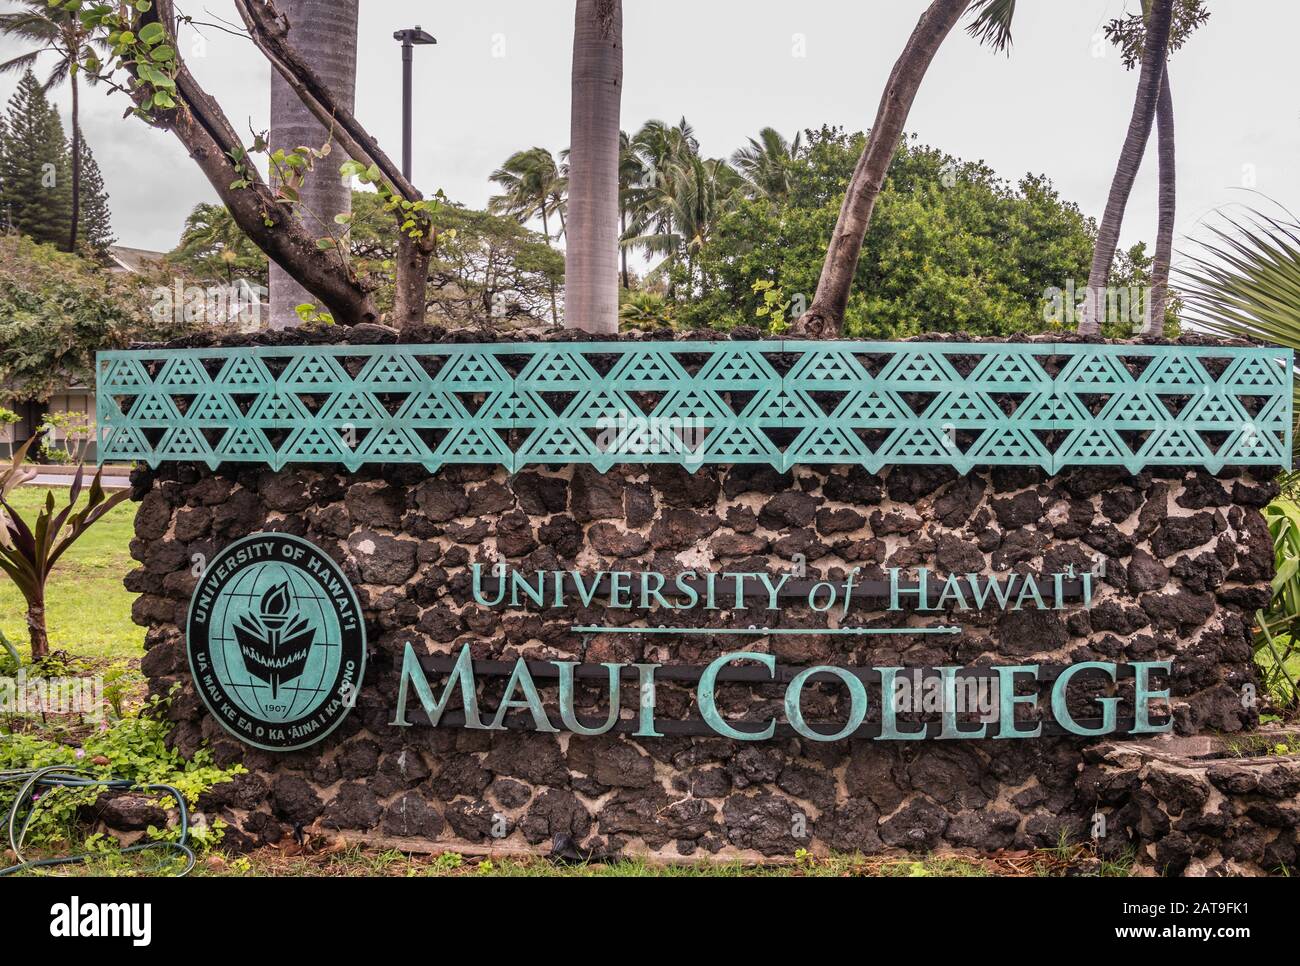 Kahului, Maui, Hawaii, USA. - 12. Januar 2020: Englisches Sprachzeichen für die University of Hawaii, Maui College Campus, in grüner Laub und Blume Stockfoto